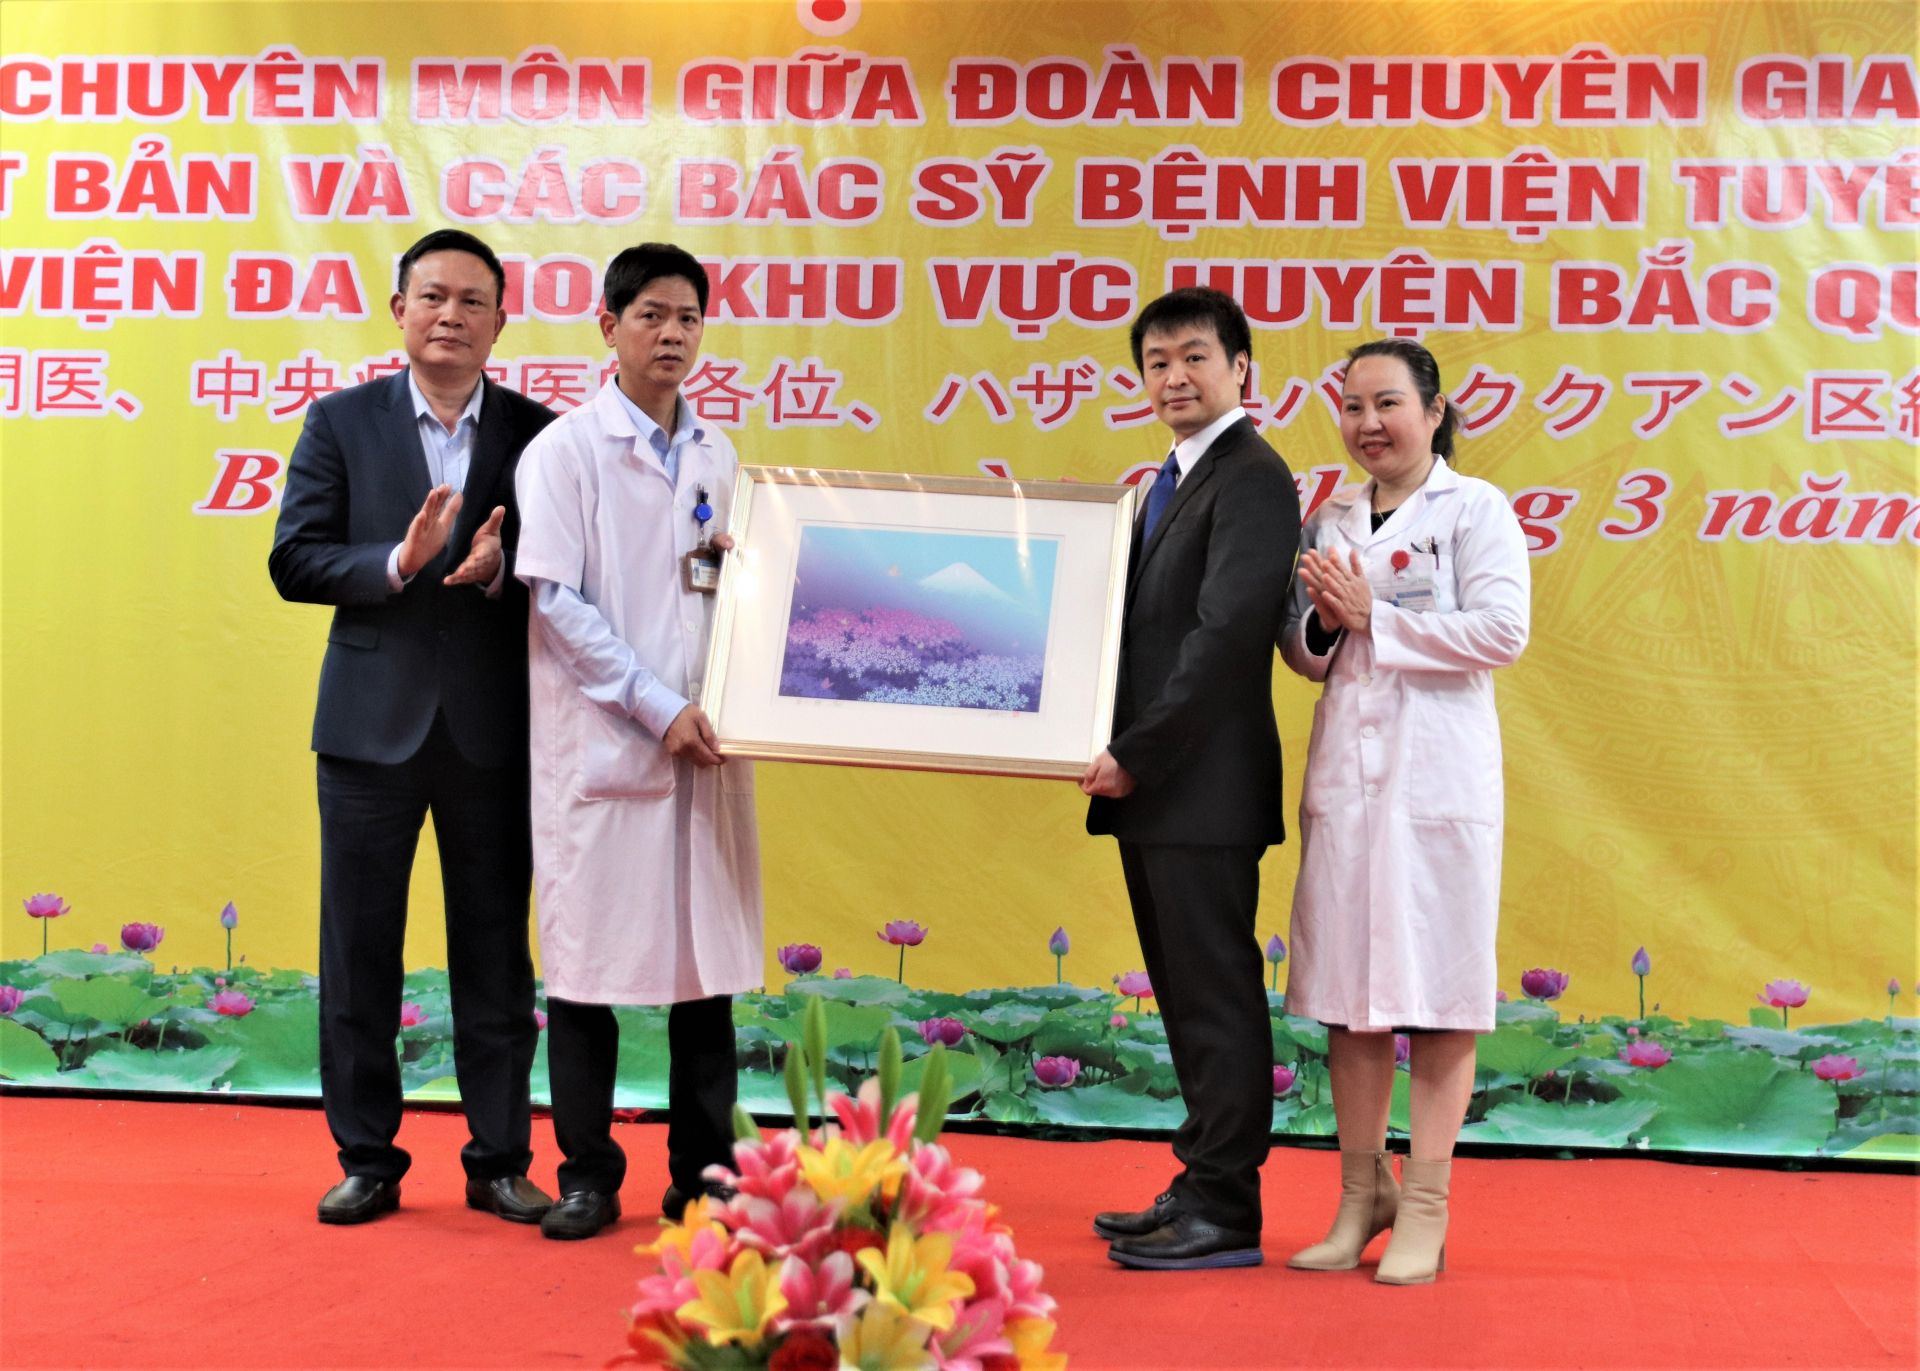 Tiến sĩ, Bác sĩ Matsuoka Yoshinori tặng bức tranh Hoa Anh đào và núi Phú Sĩ – biểu tượng của Nhật Bản cho lãnh đạo Bệnh viện ĐKKV huyện Bắc Quang.
